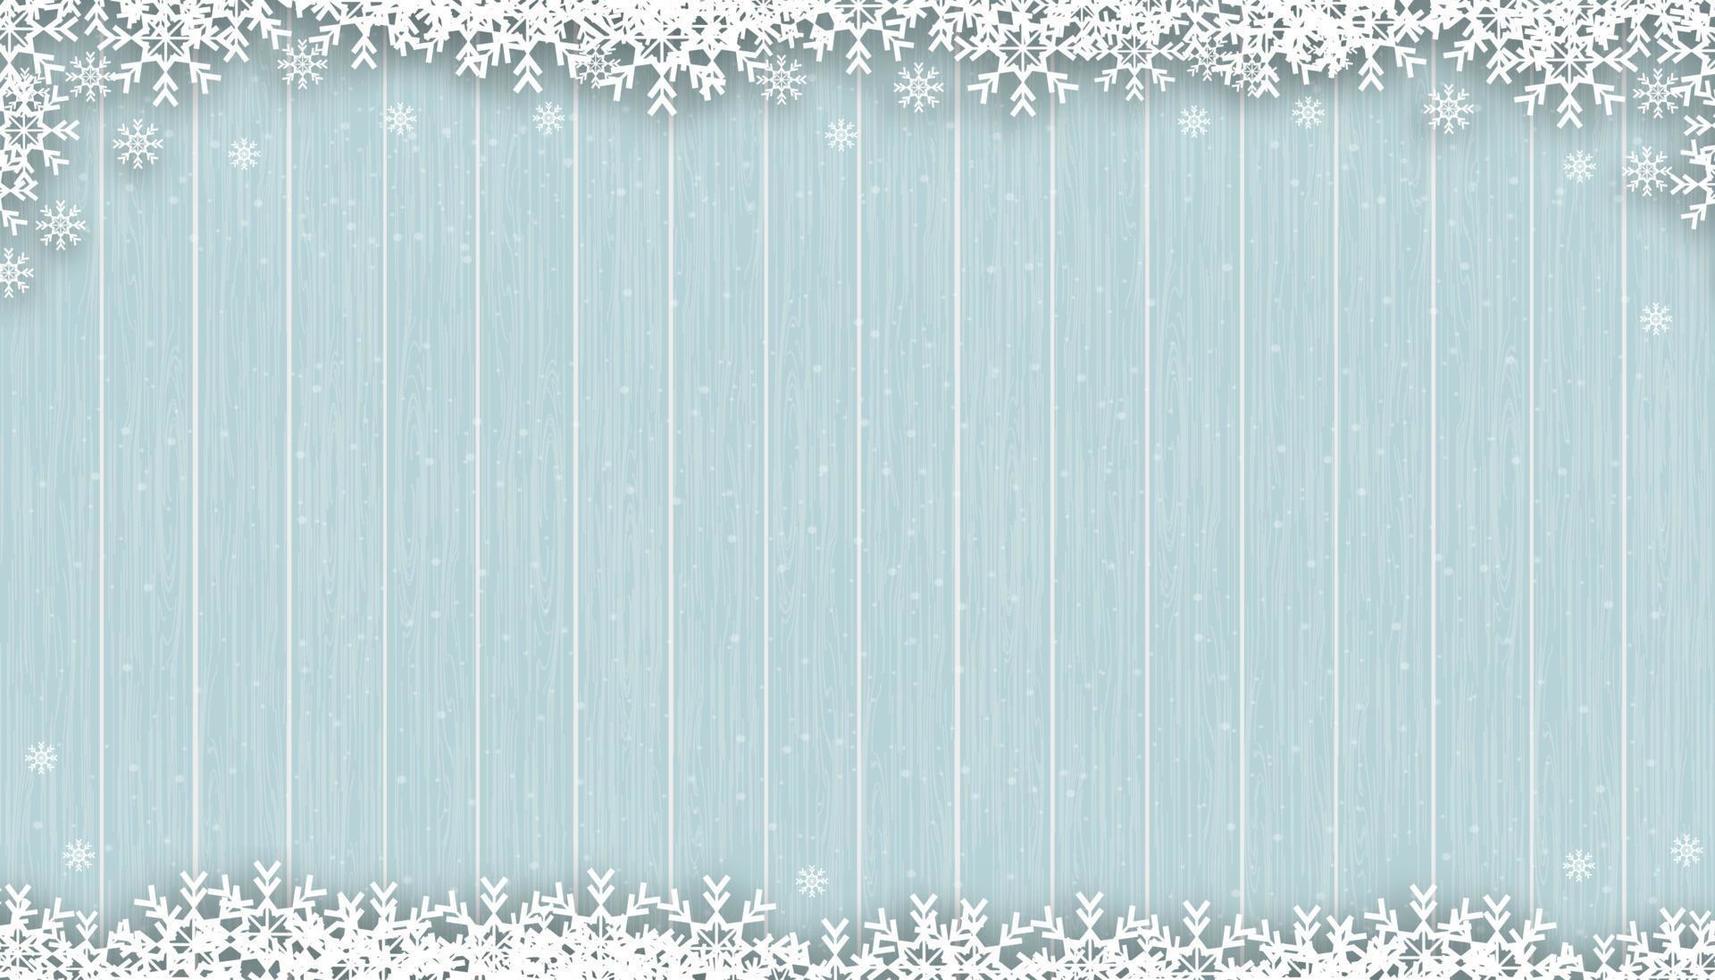 fond de noël avec des flocons de neige sur la texture du bois bleu, scène d'hiver vectorielle avec neige sur la texture du panneau en bois, fond de bannière d'affichage 3d pour le nouvel an 2023 ou la promotion de noël vecteur